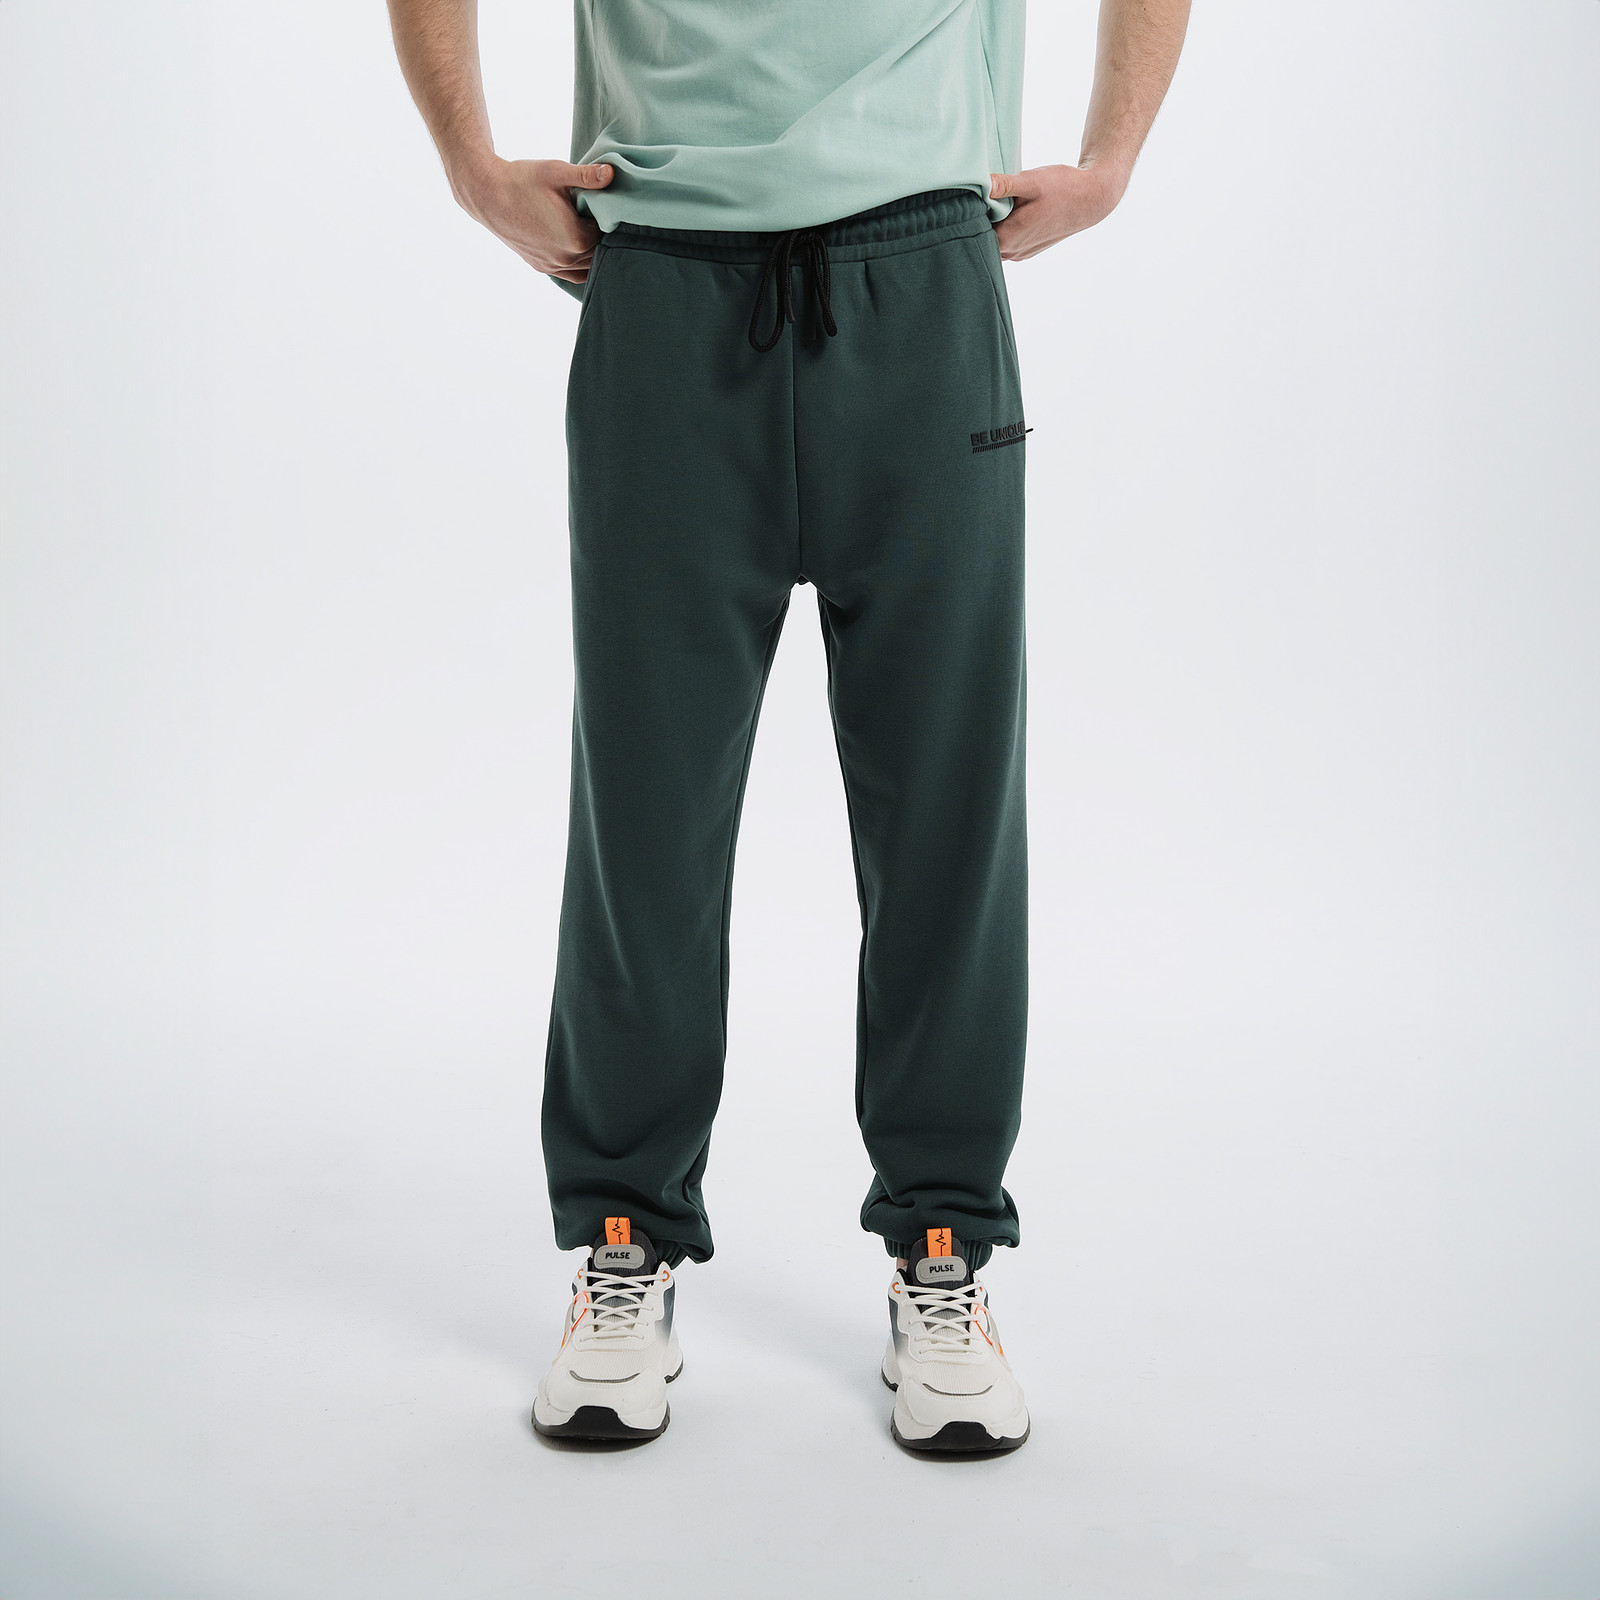 Спортивные брюки мужские PULSE 41MP-P33 зеленые L